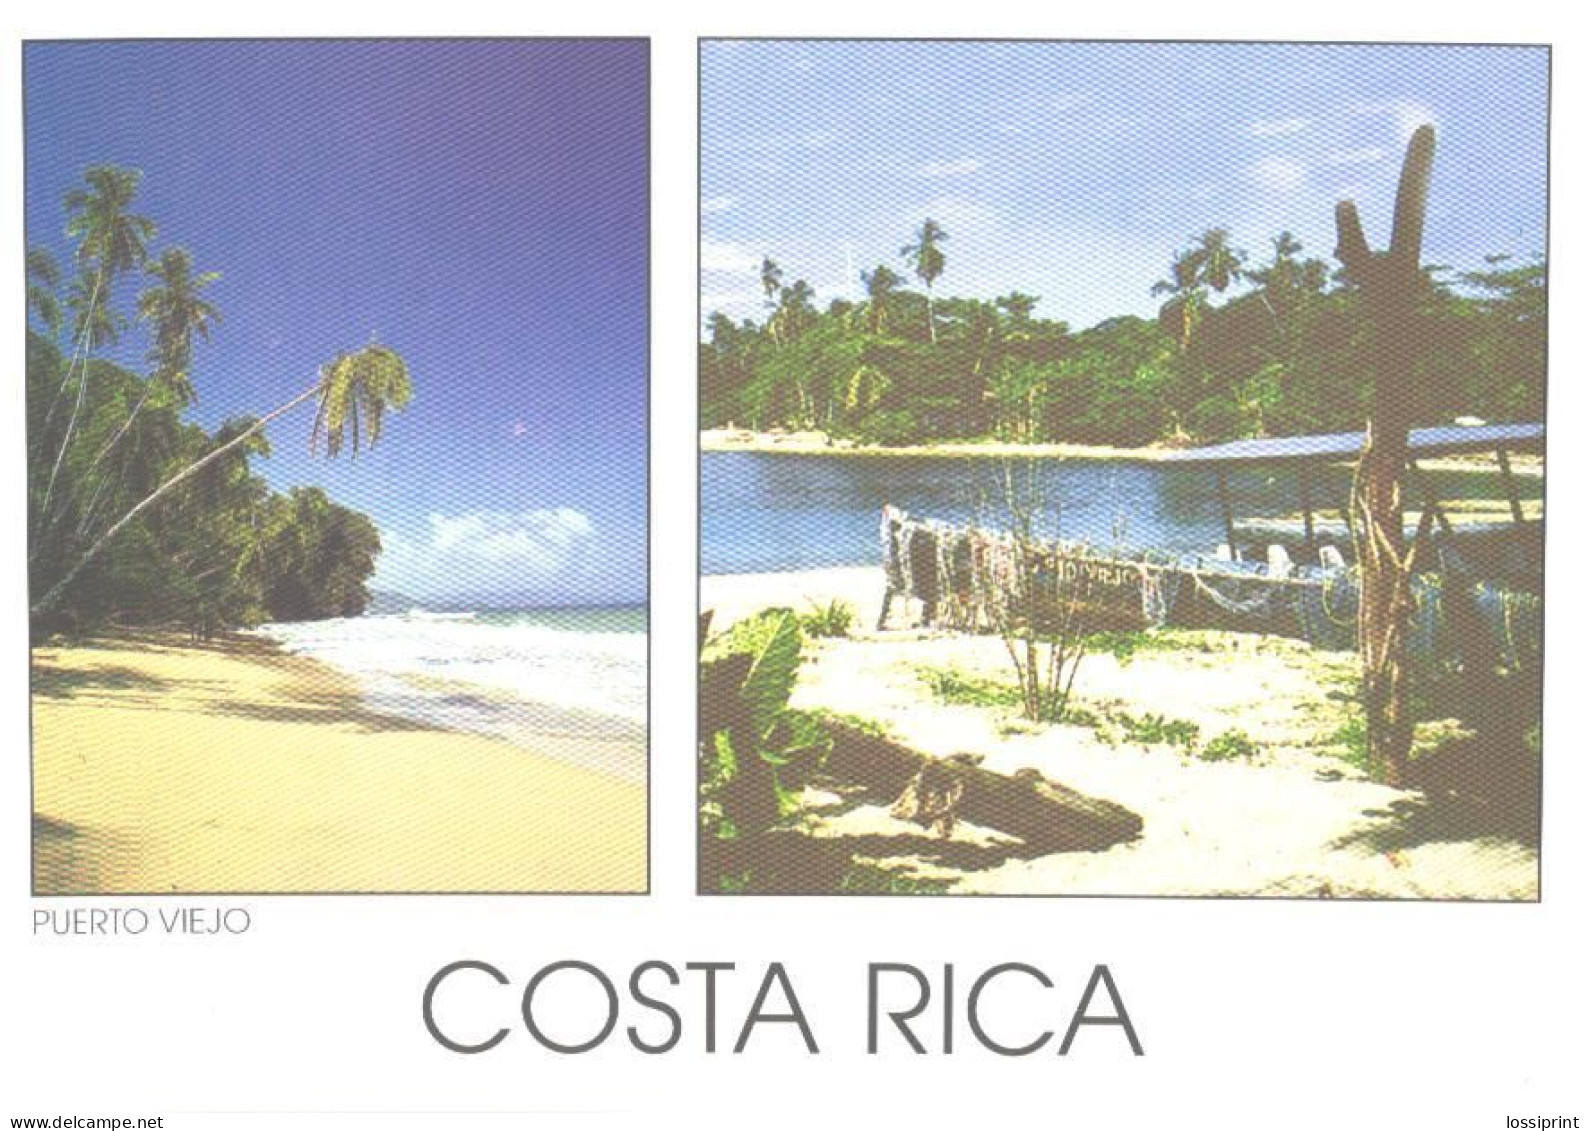 Costa Rica:Puerto Viejo, Caribean Coast - Costa Rica